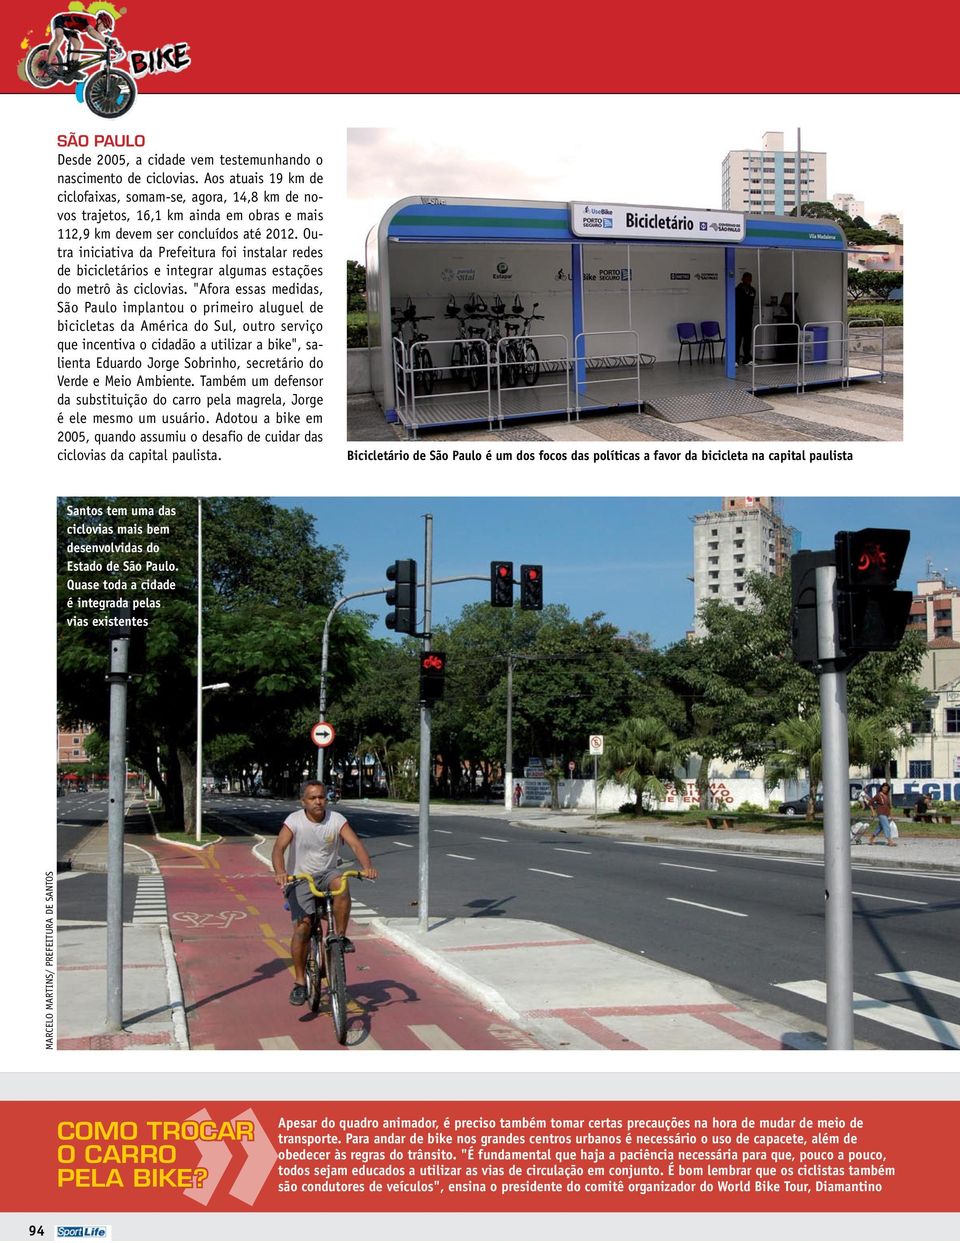 Outra iniciativa da Prefeitura foi instalar redes de bicicletários e integrar algumas estações do metrô às ciclovias.